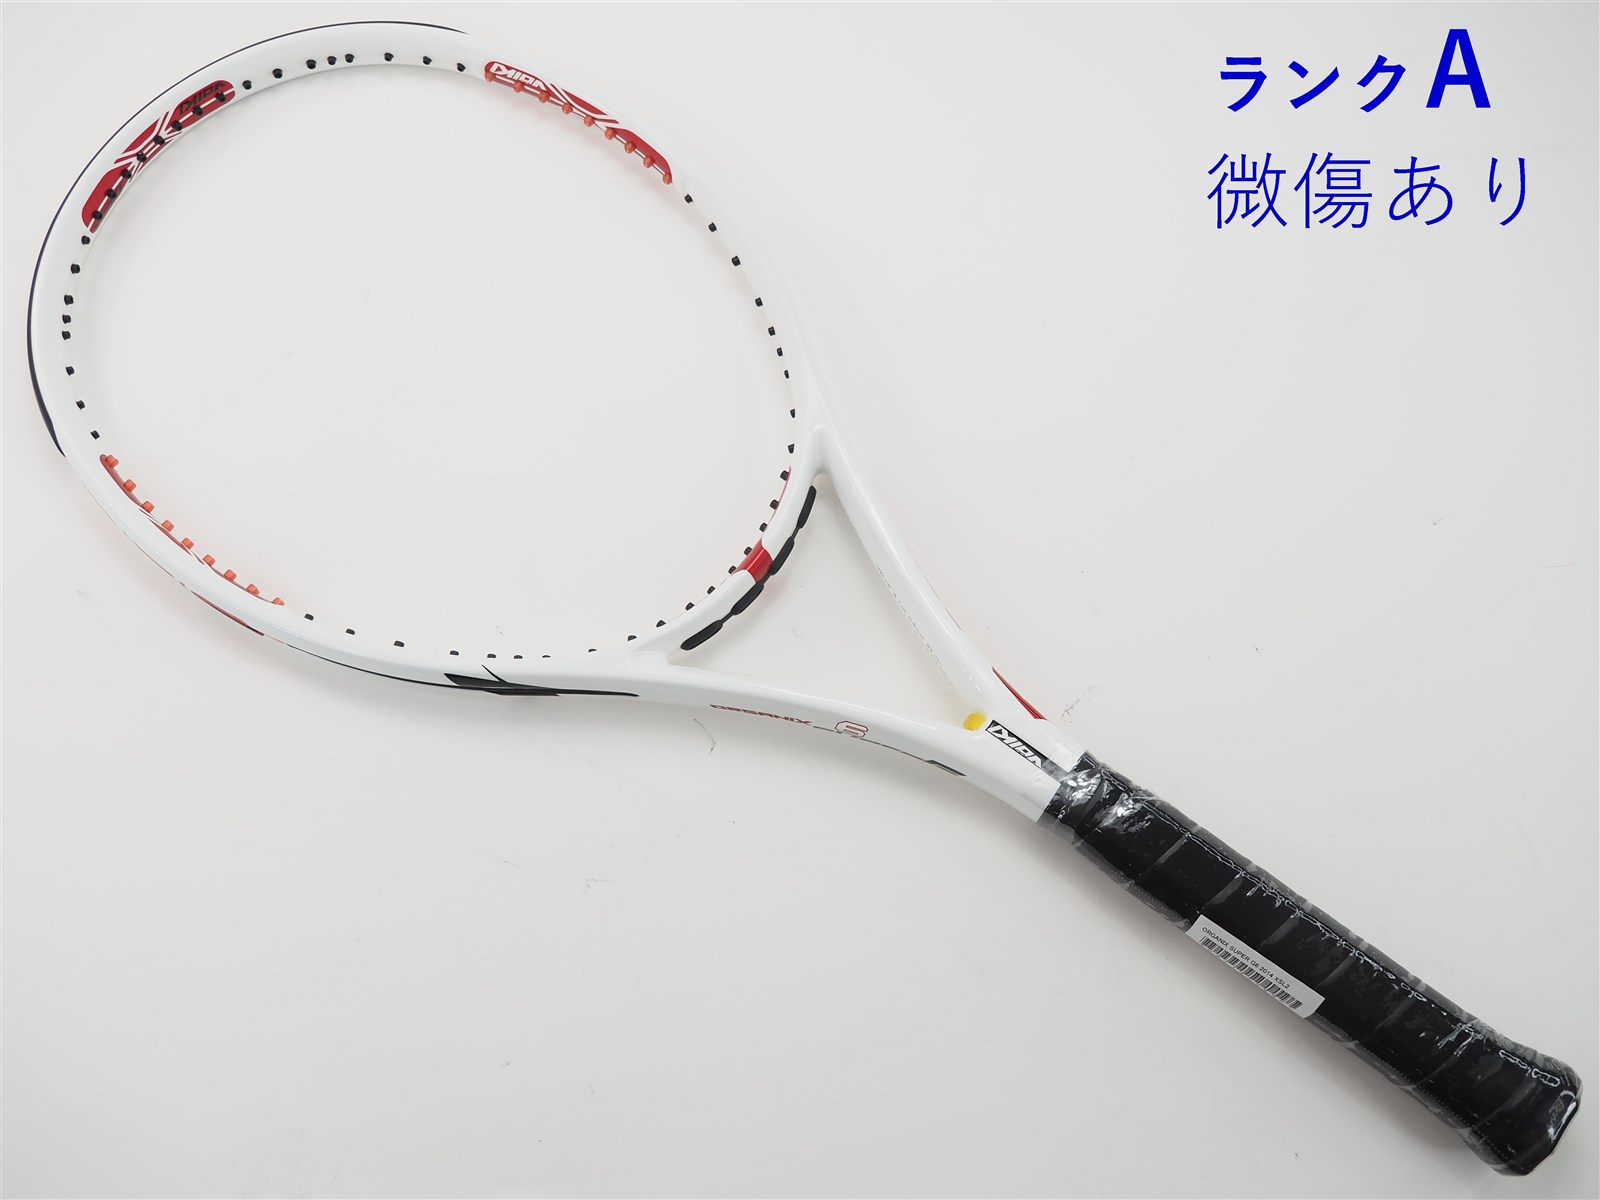 テニスラケット フォルクル オーガニクス スーパー G6 2014年モデル【一部グロメット割れ有り】 (XSL2)VOLKL ORGANIX SUPER G6 2014